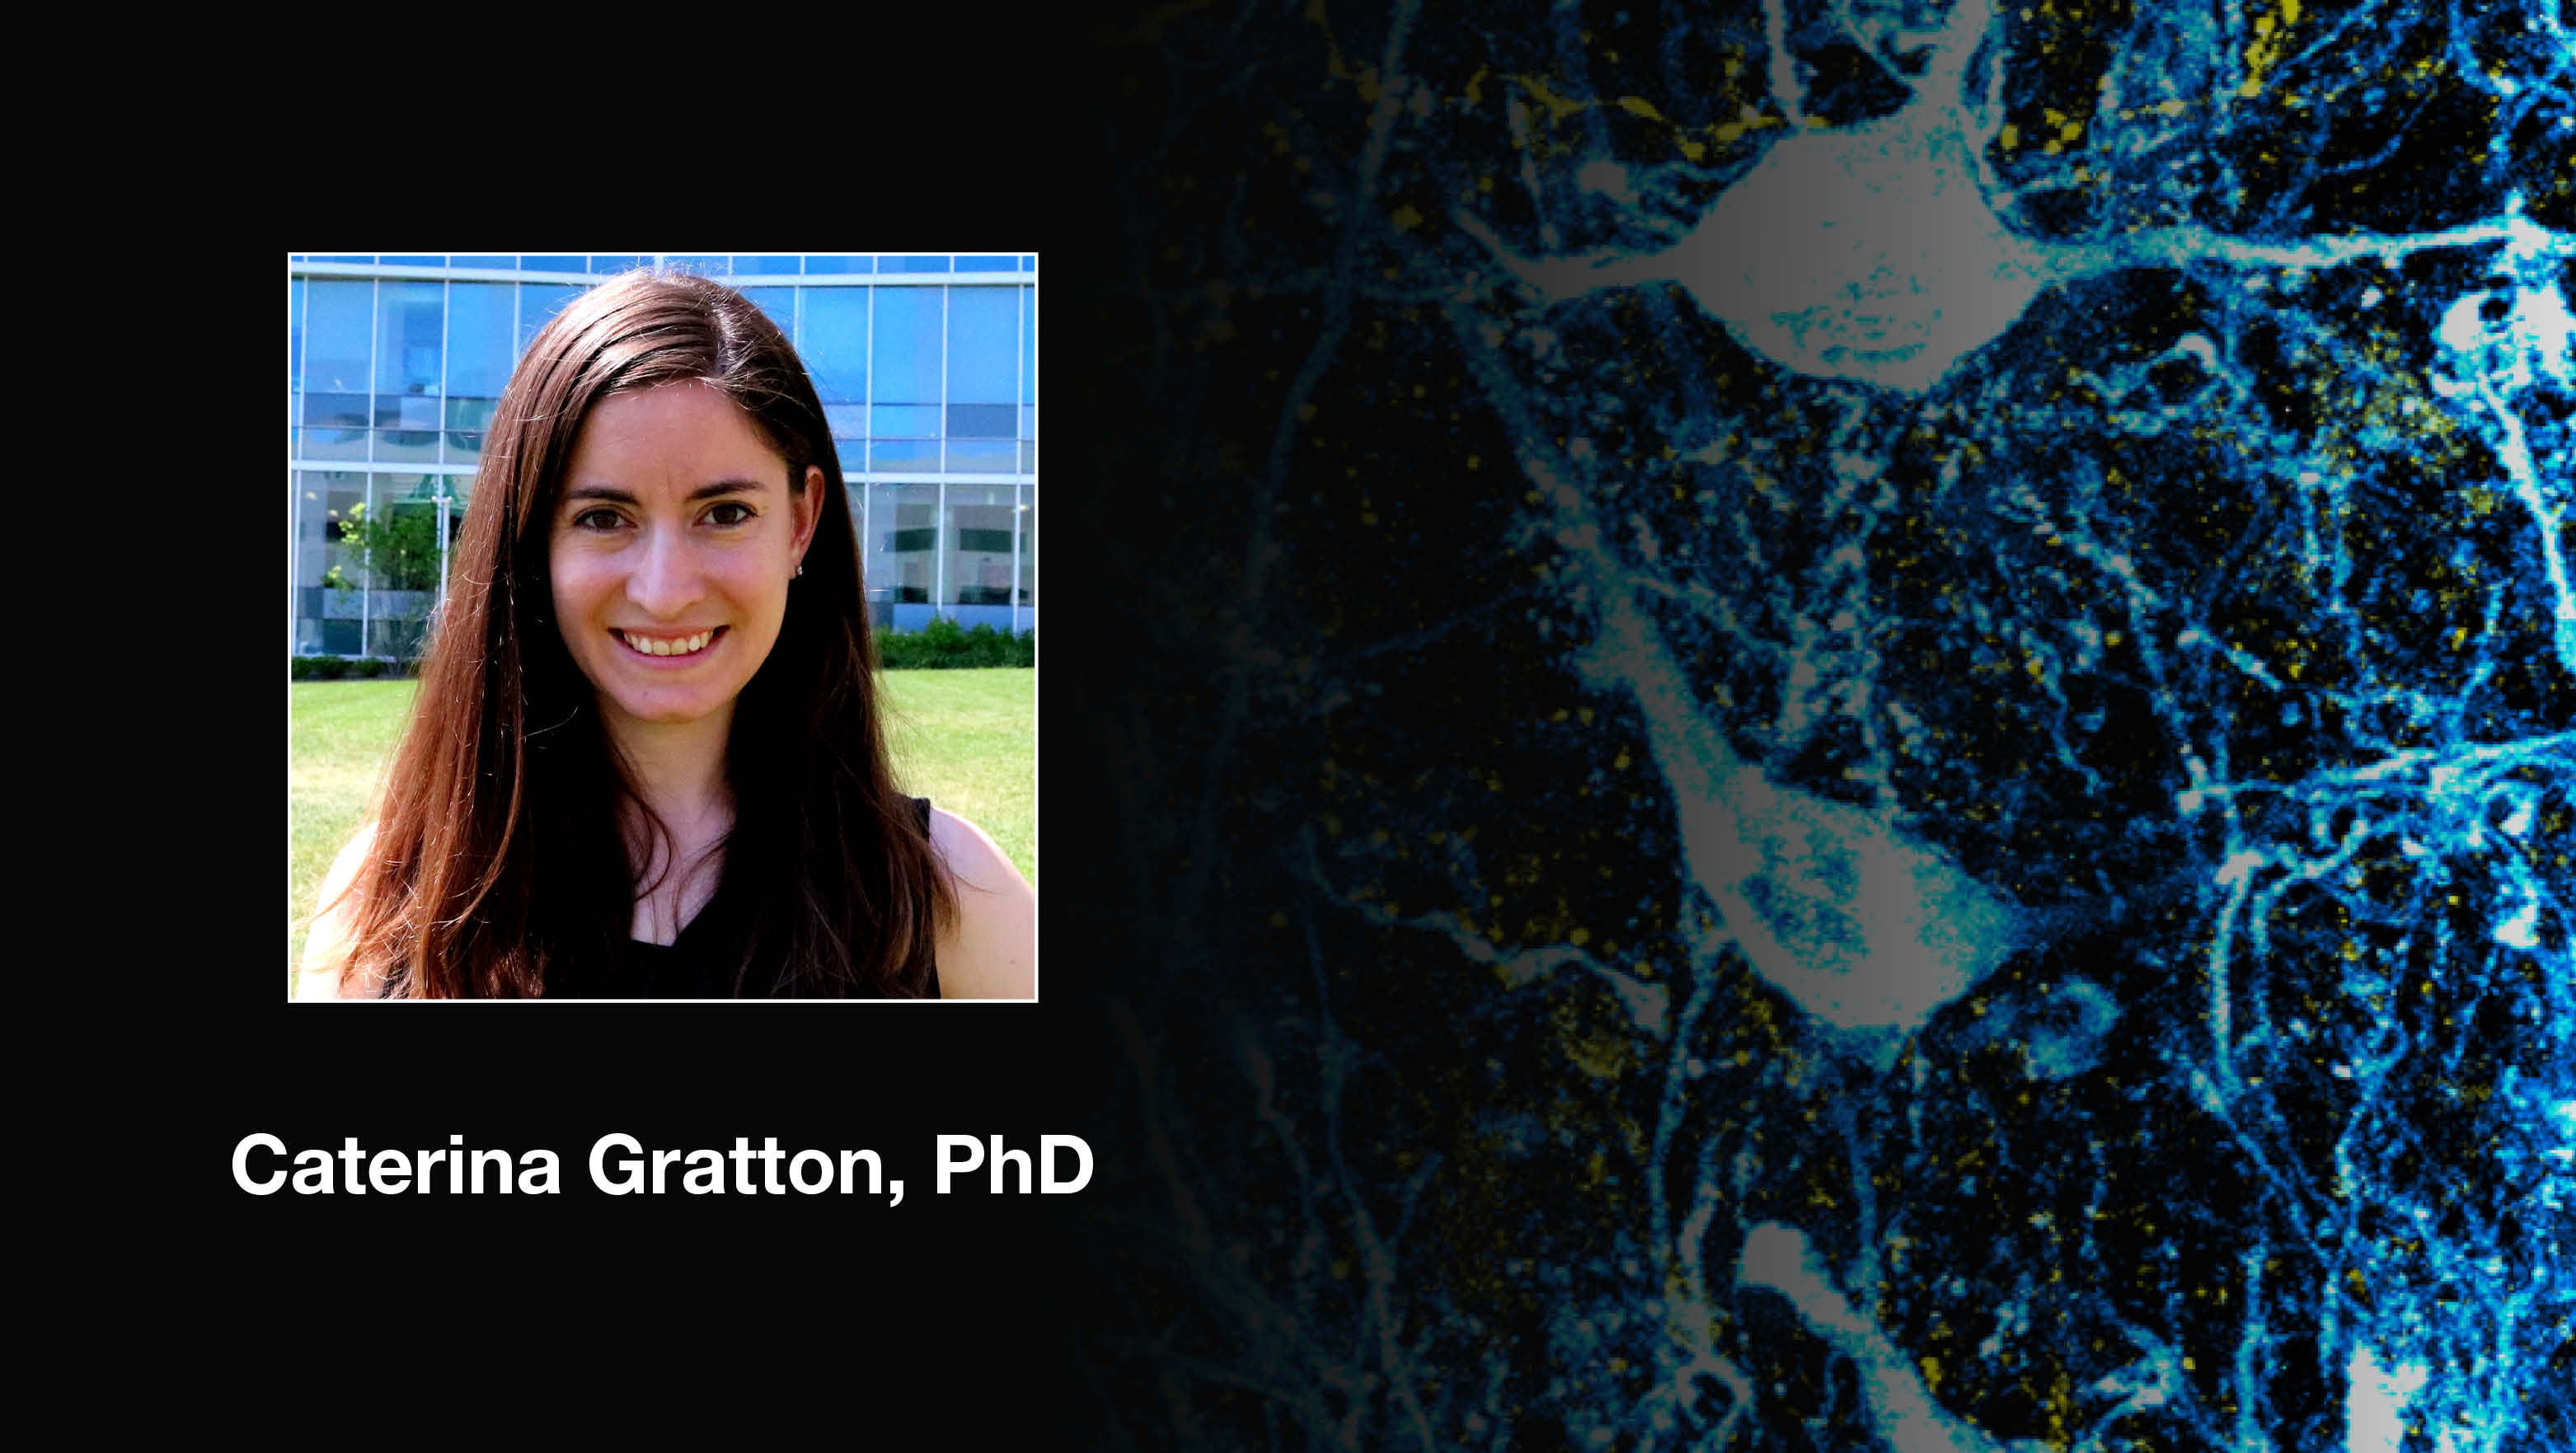 Headshot of Caterina Gratton over a scientific image